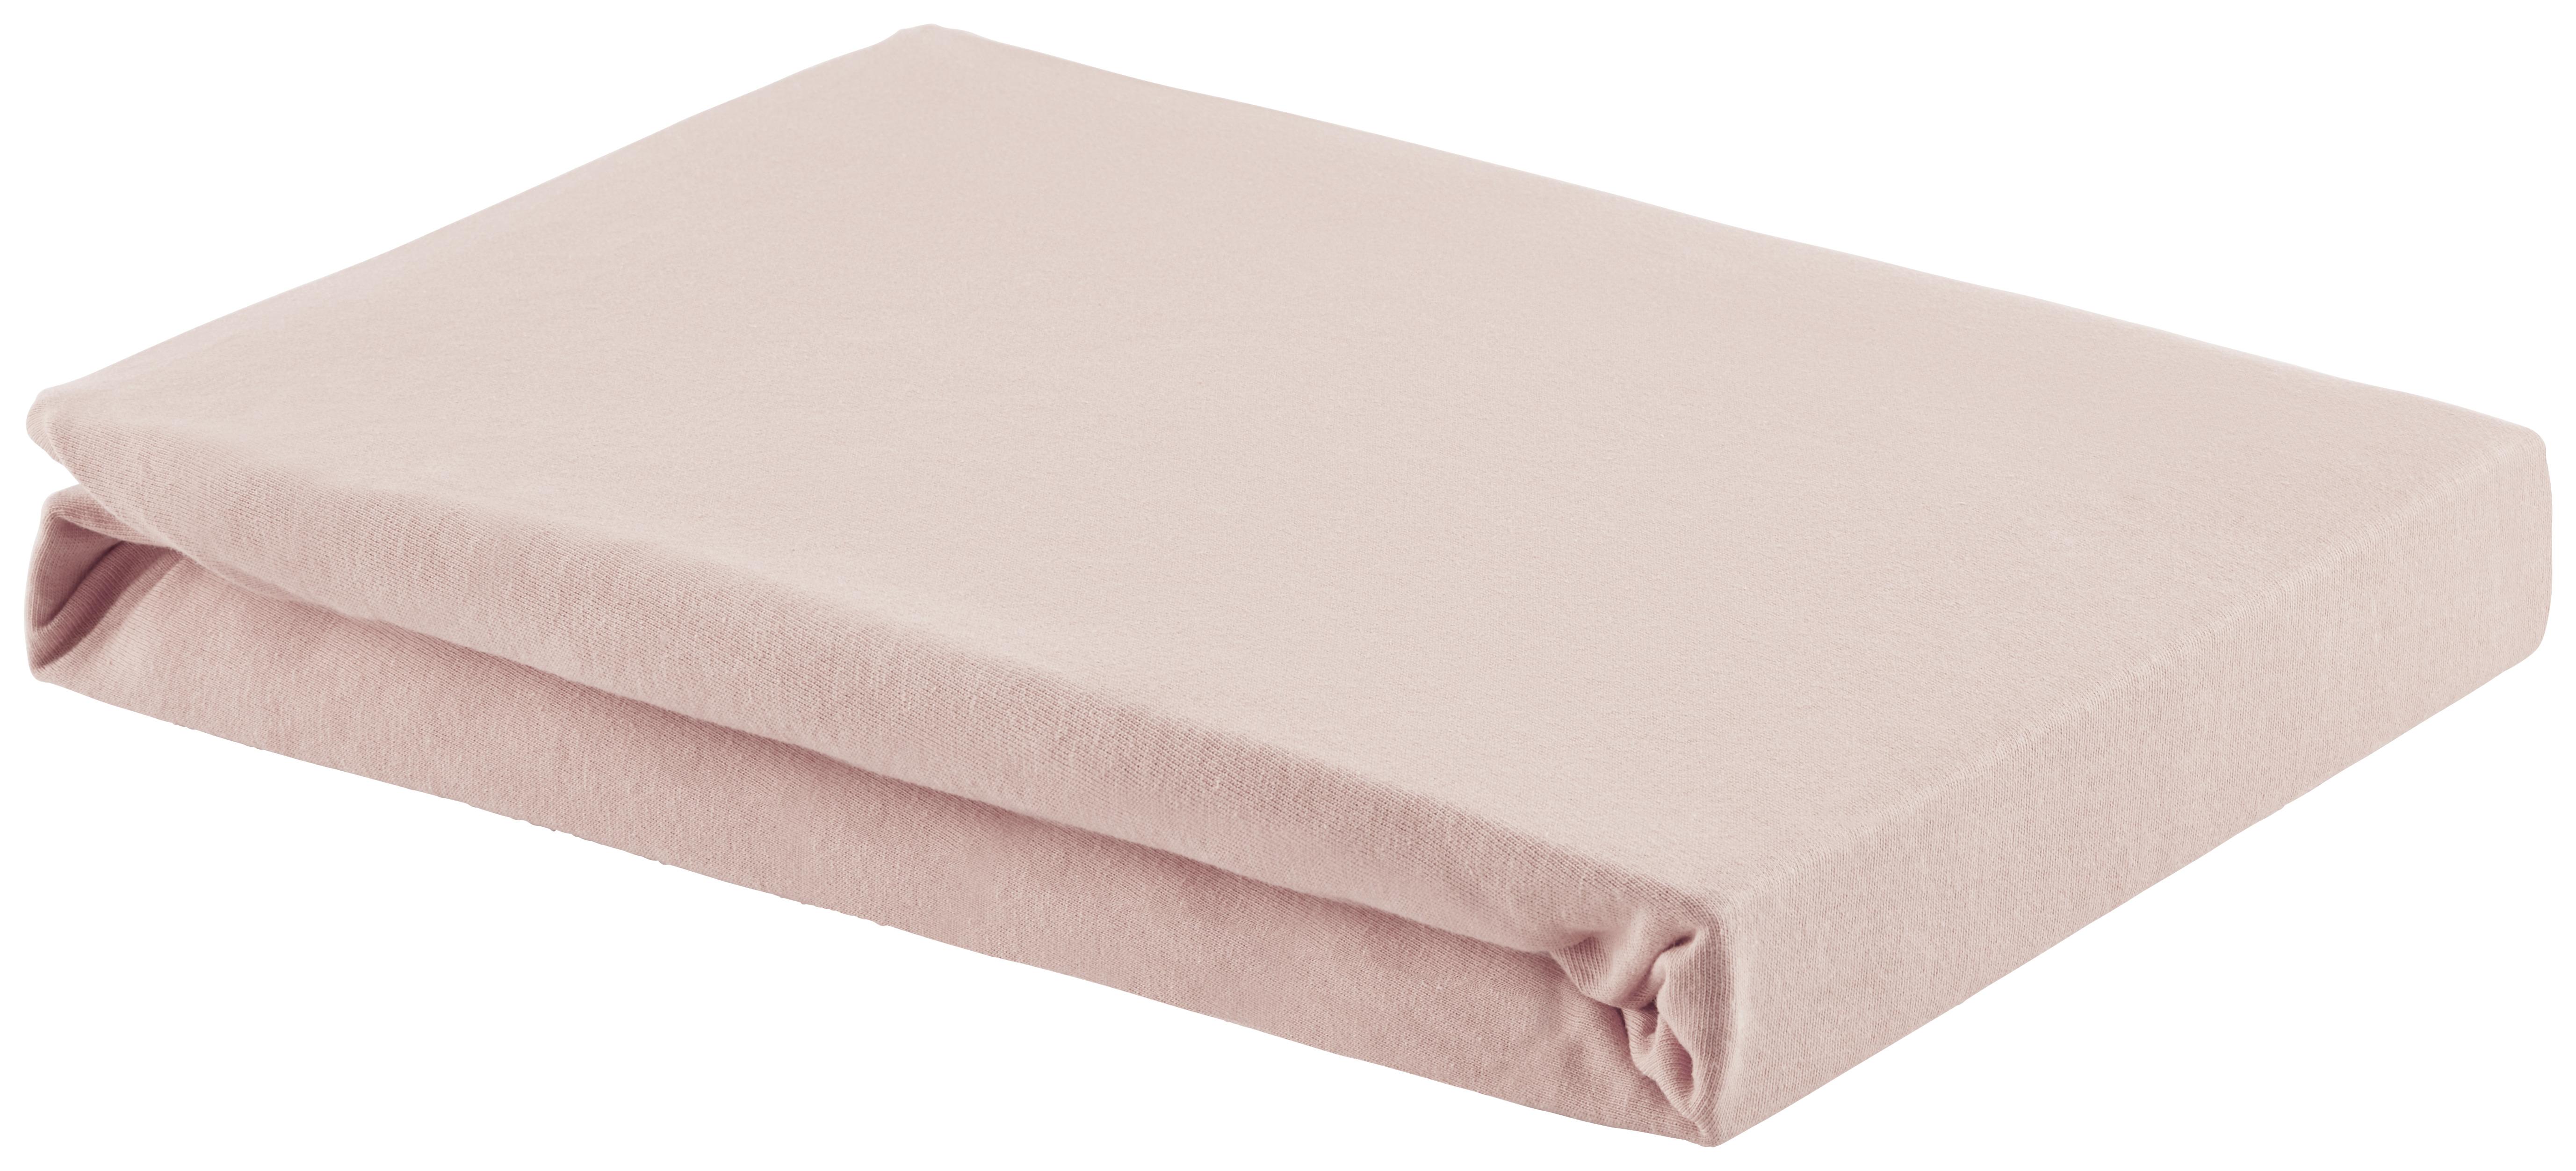 Elastické Prostěradlo Basic, 180/200 Cm - růžová, textil (180/200cm) - Modern Living